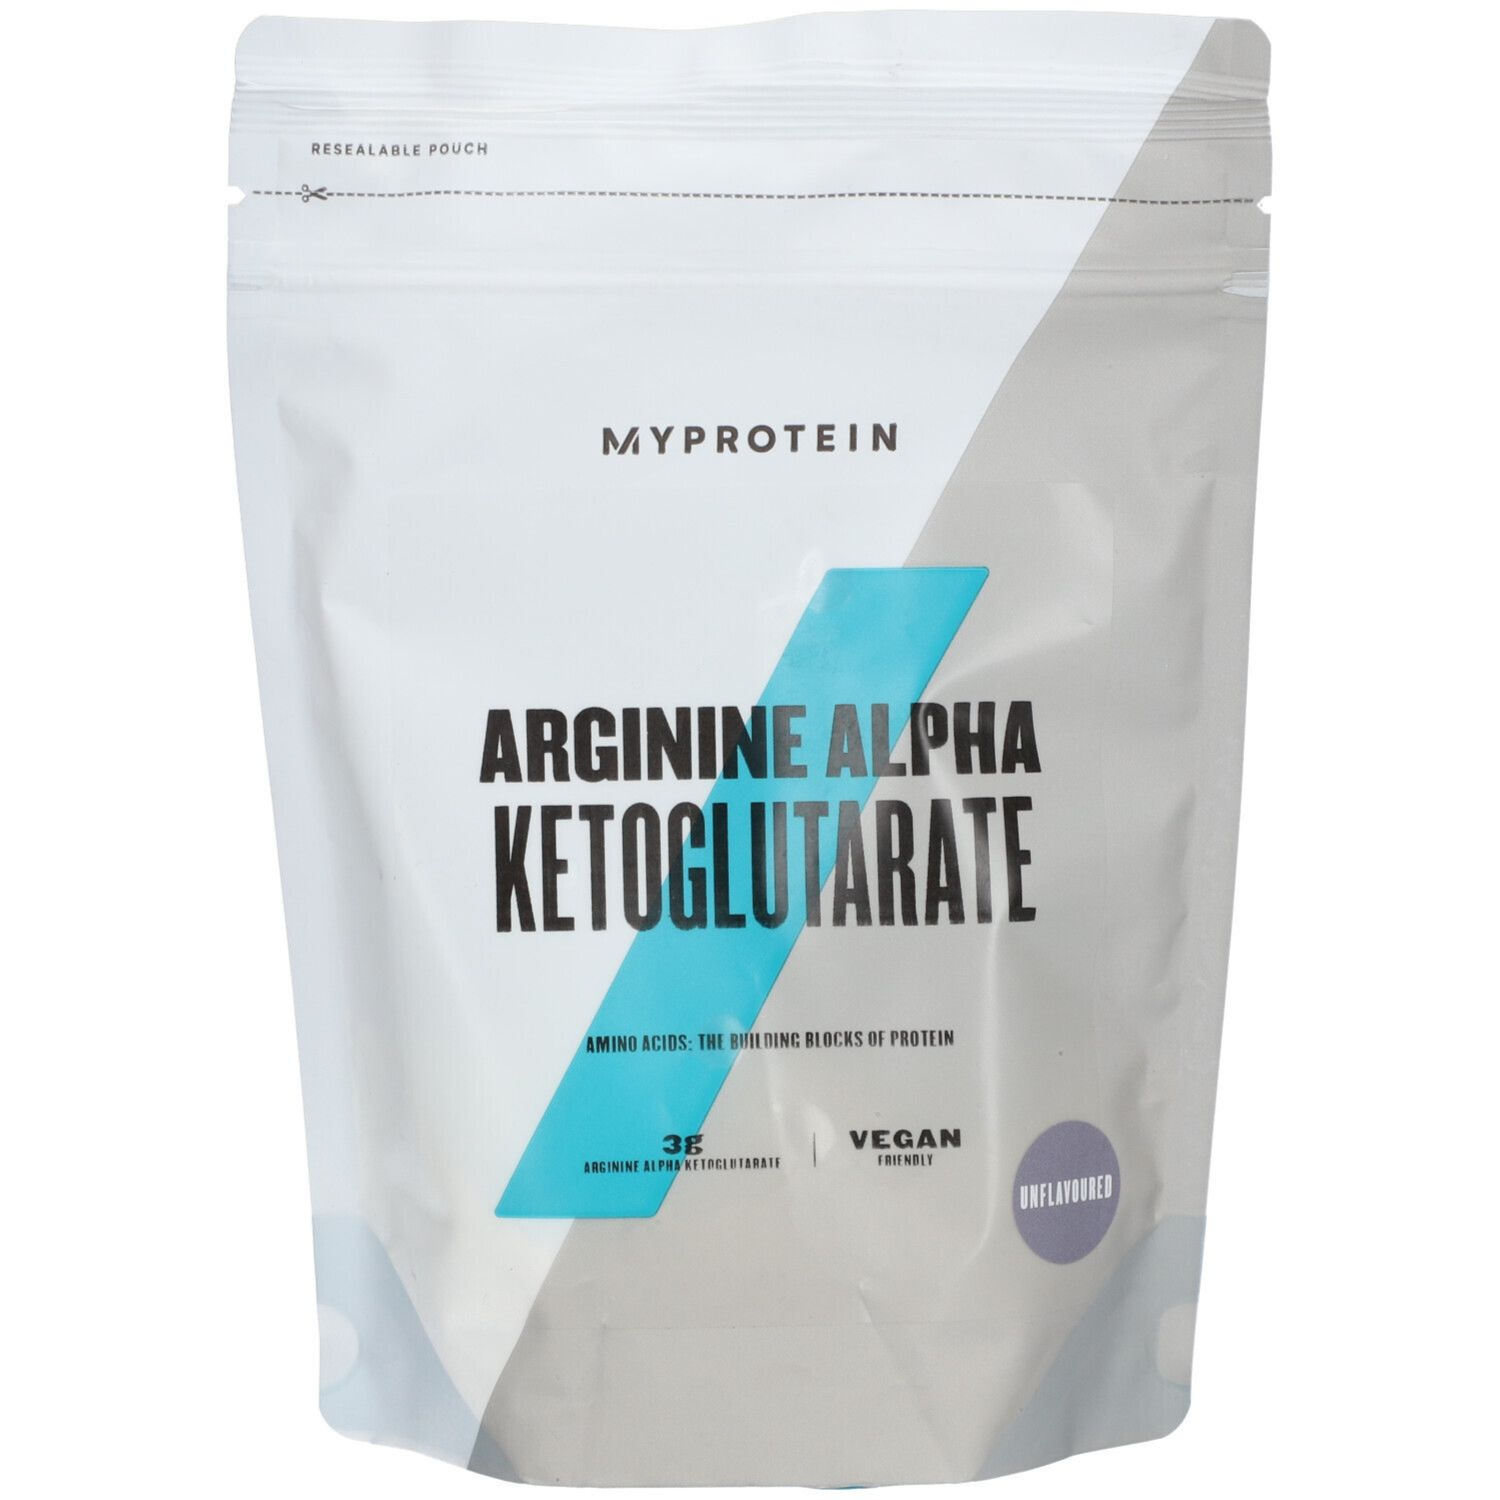 MyProtein Arginine Alpha Ketoglutarate Vegan Friendly